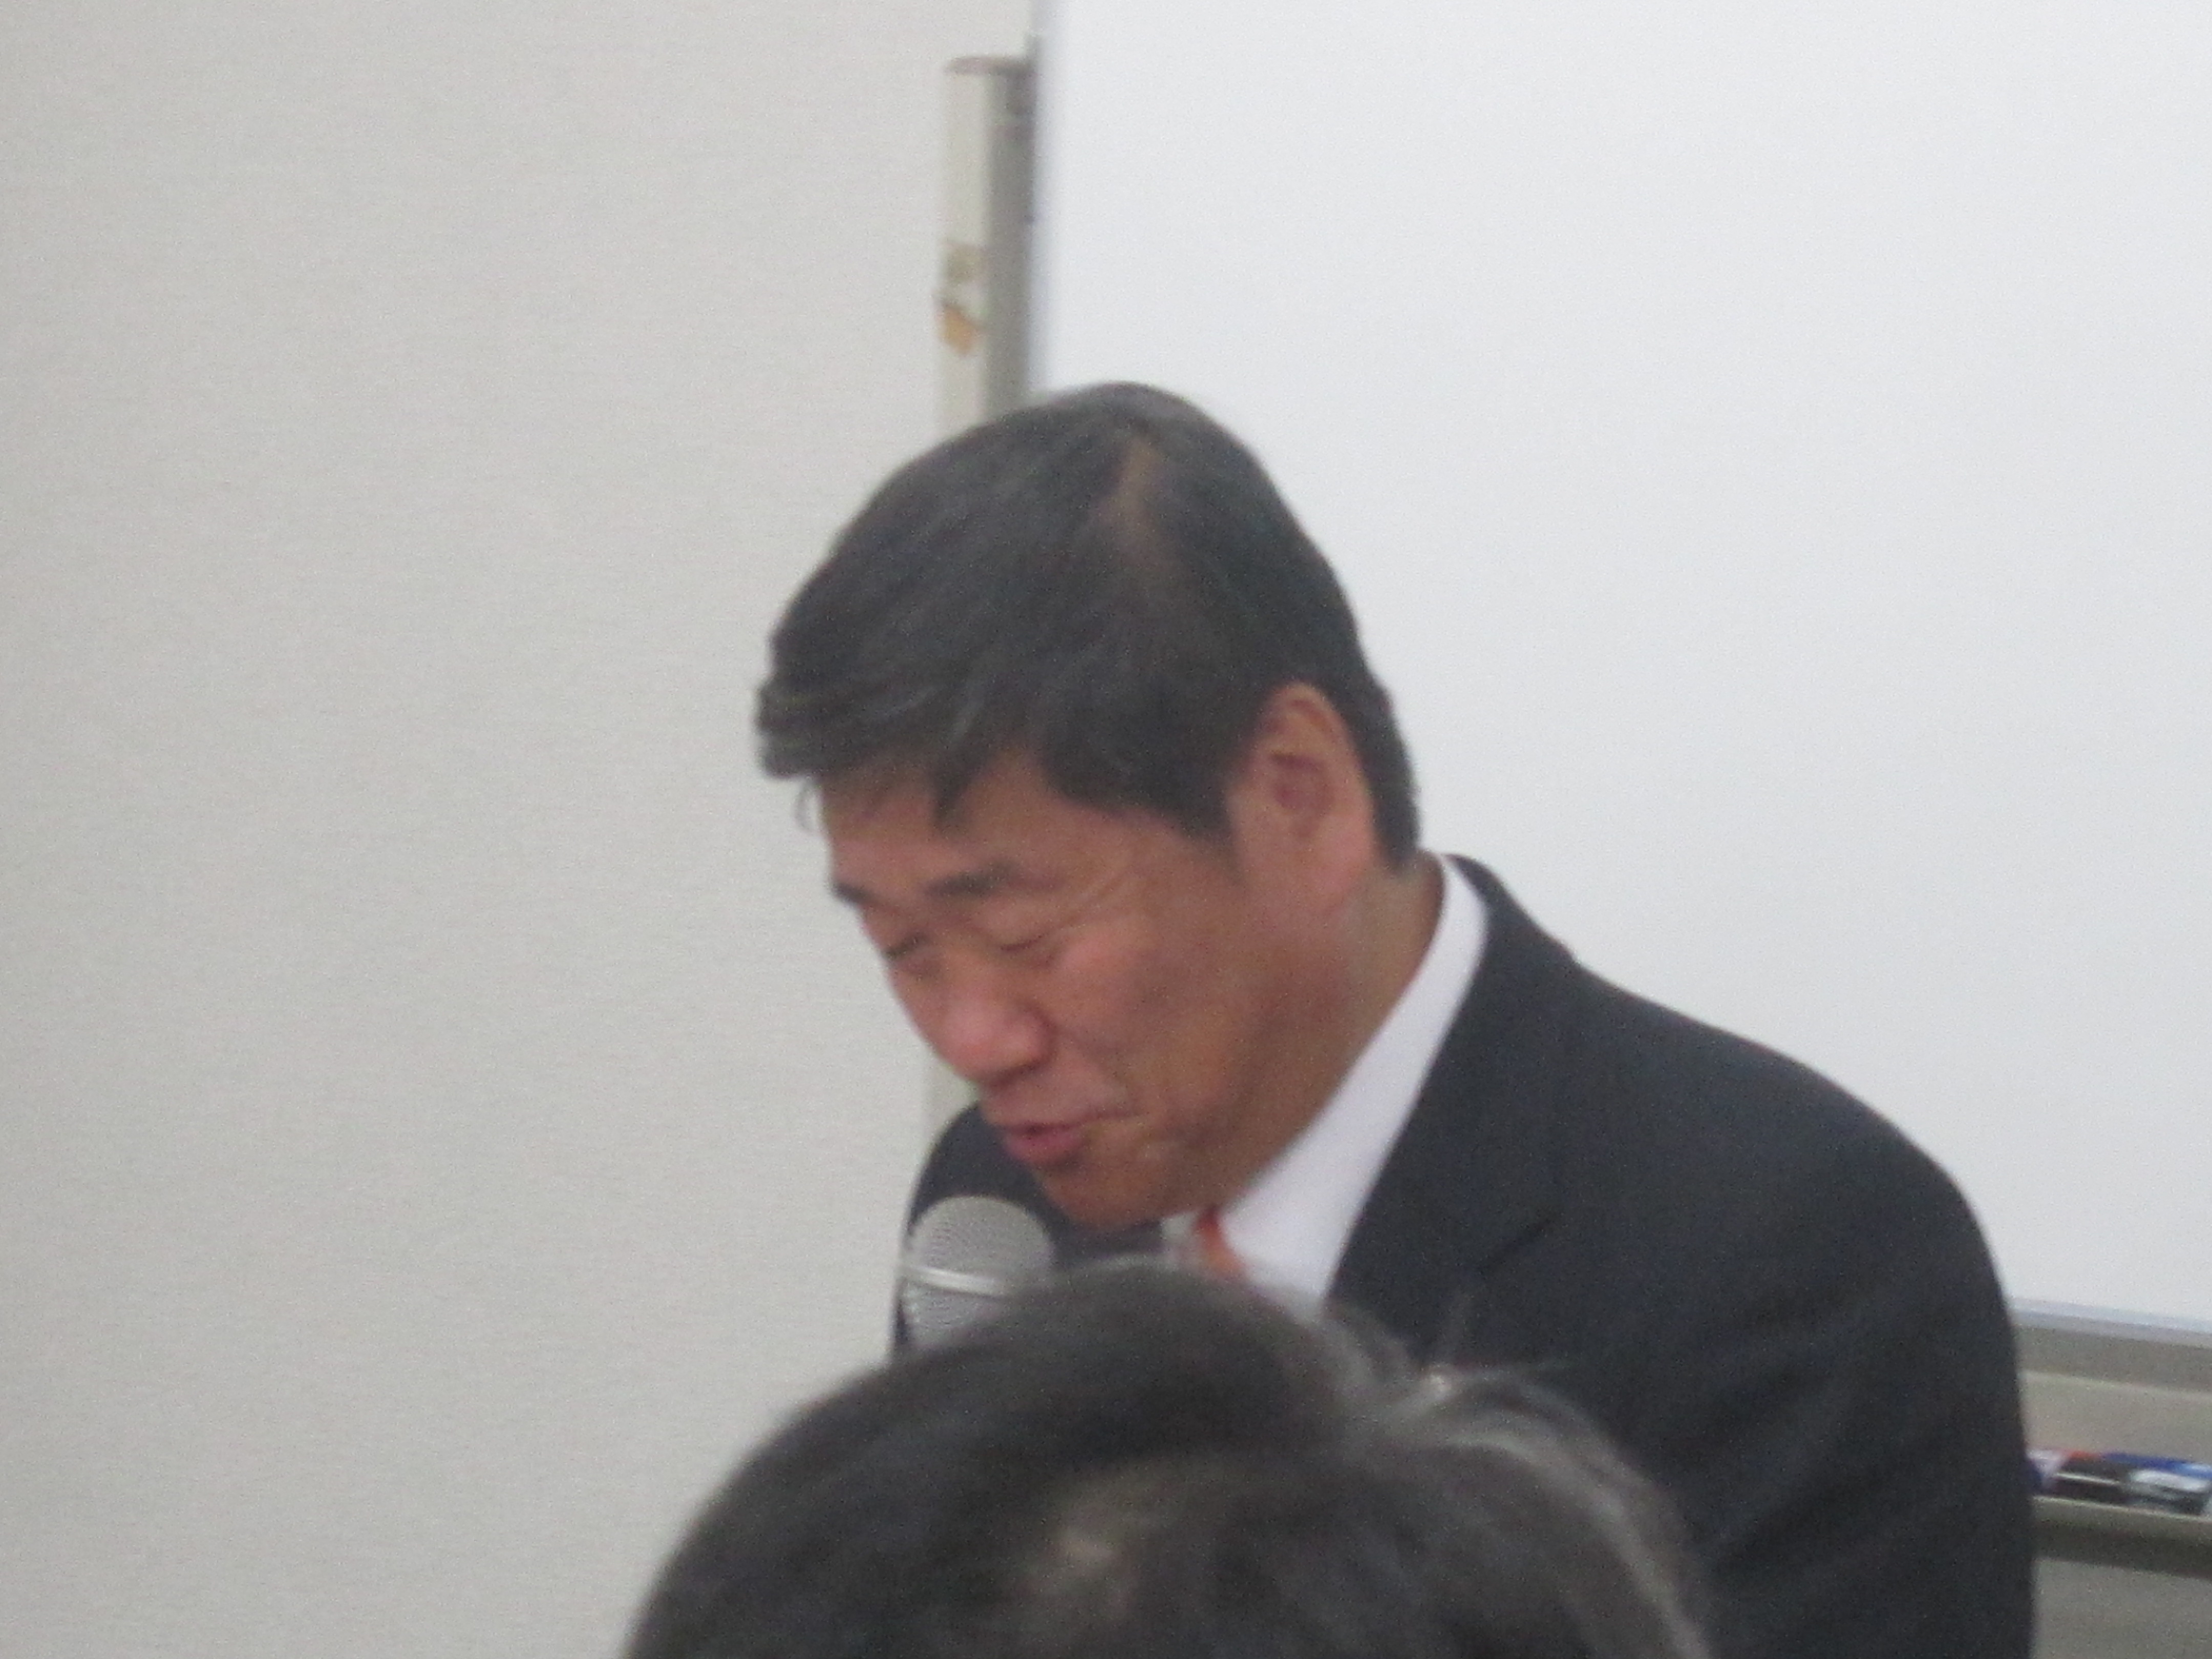 IMG 1911 - 2012年11月27日AOsuki第4回勉強会八戸市小林市長